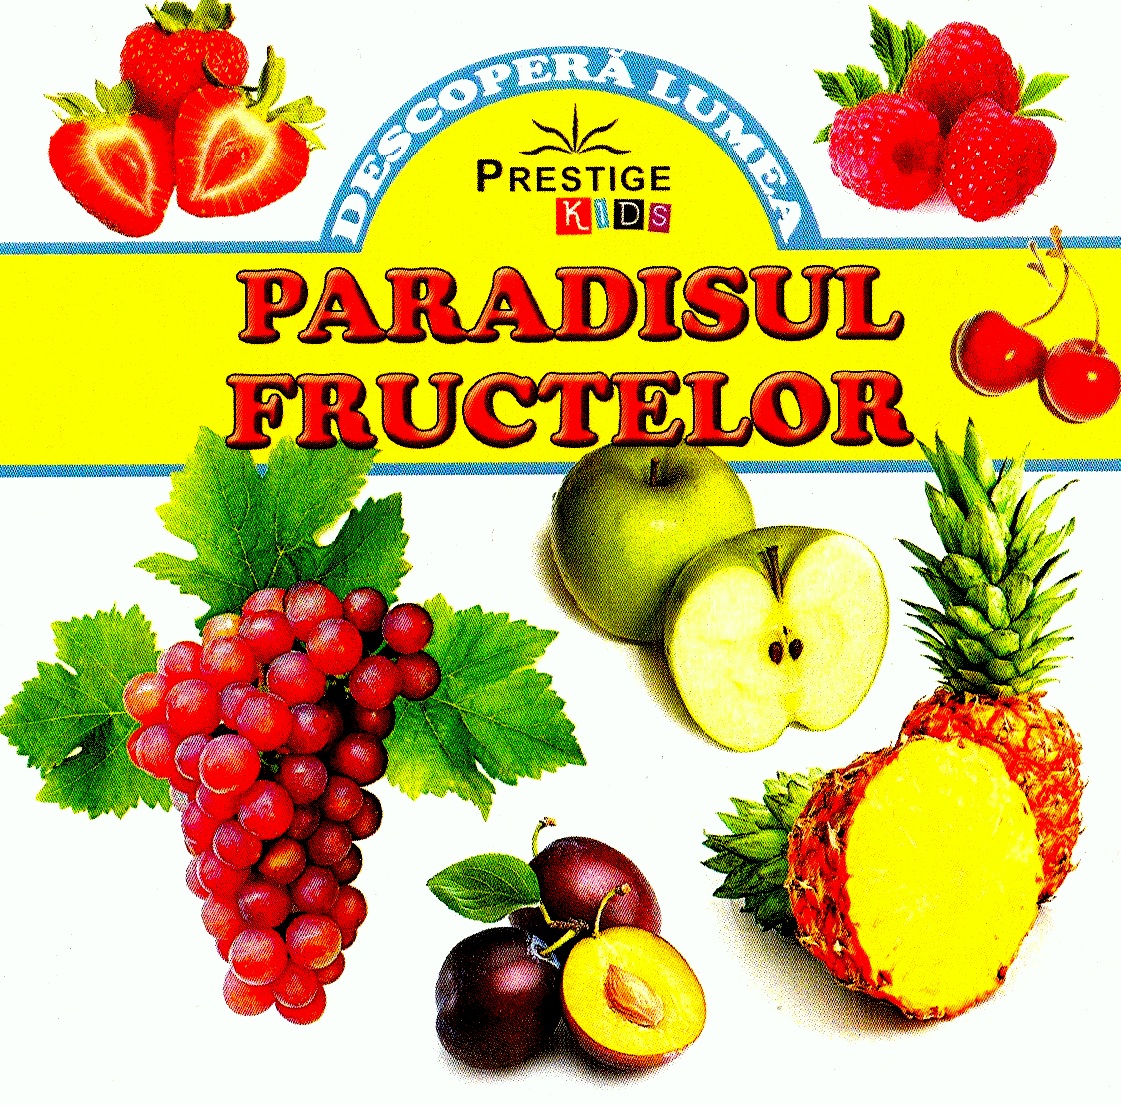 Paradisul fructelor